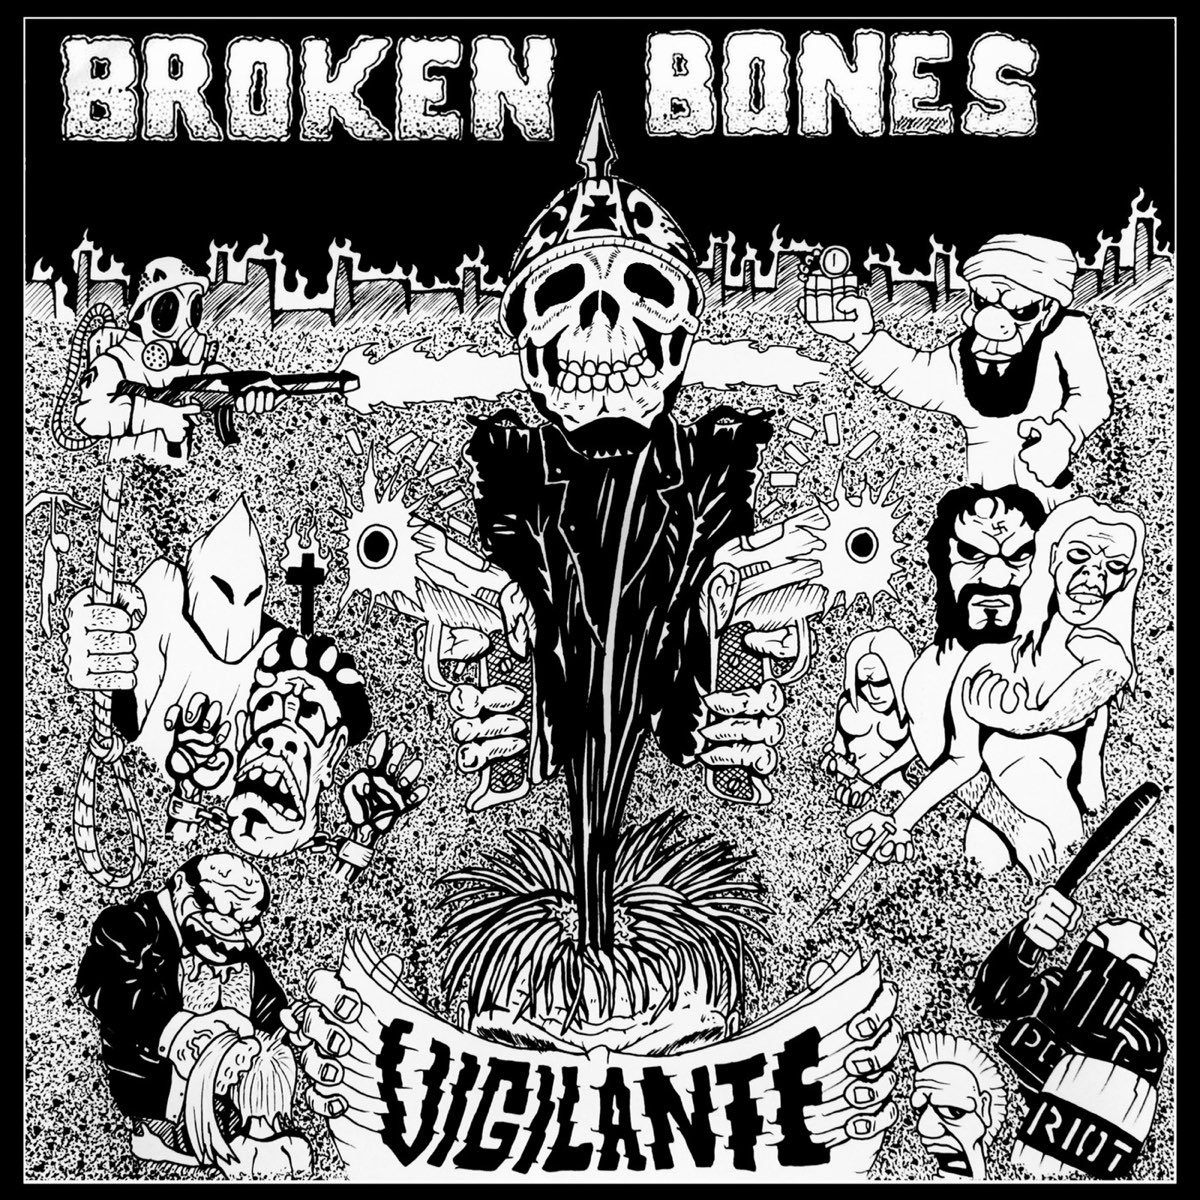 Bones gone. Bones альбомы. Broken Bones обложки альбомов.